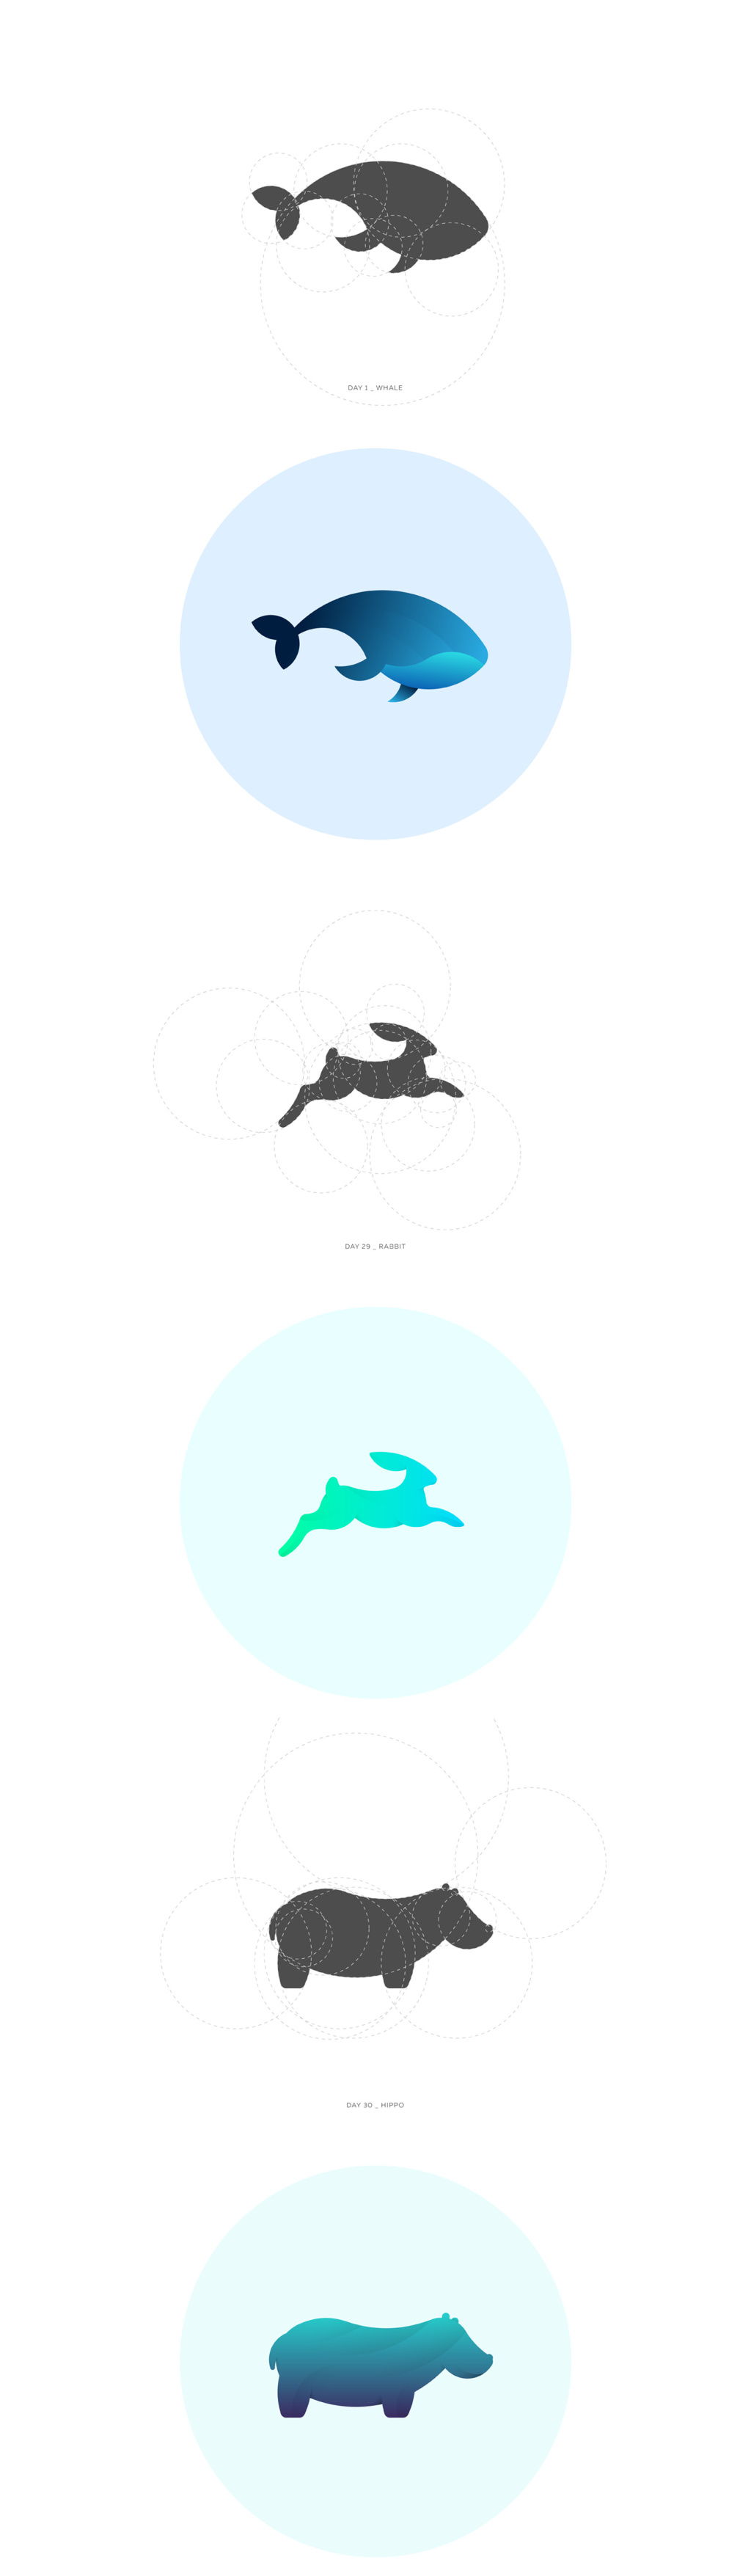 一系列圆切割动物图案设计